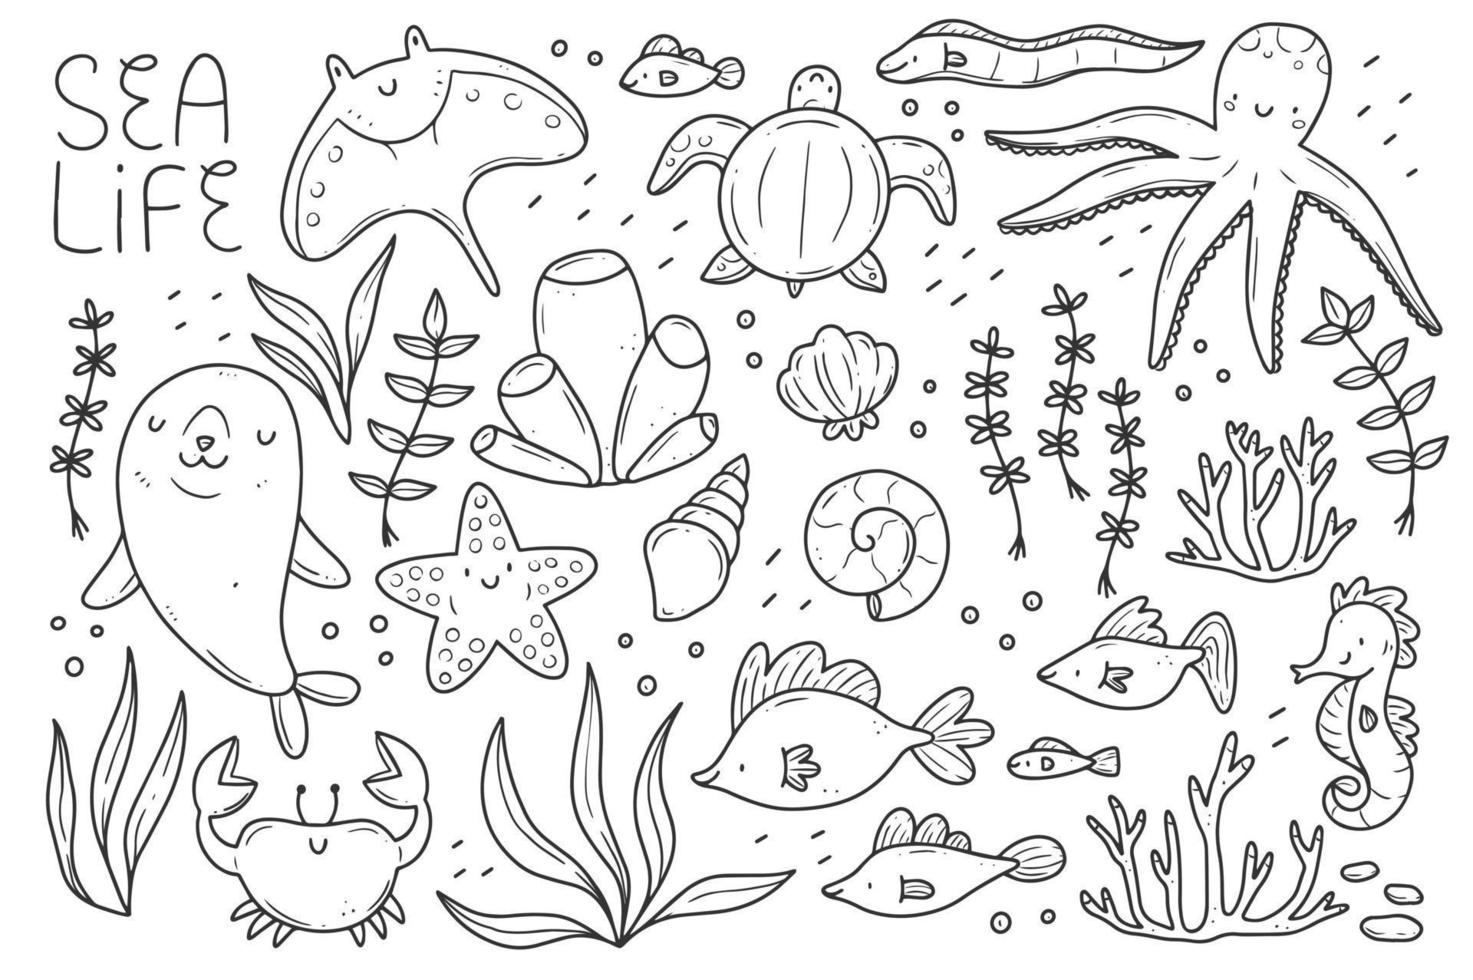 jeu de doodle de la vie marine. animaux marins dans un style linéaire. collection d'éléments marins. illustration vectorielle isolée. vecteur